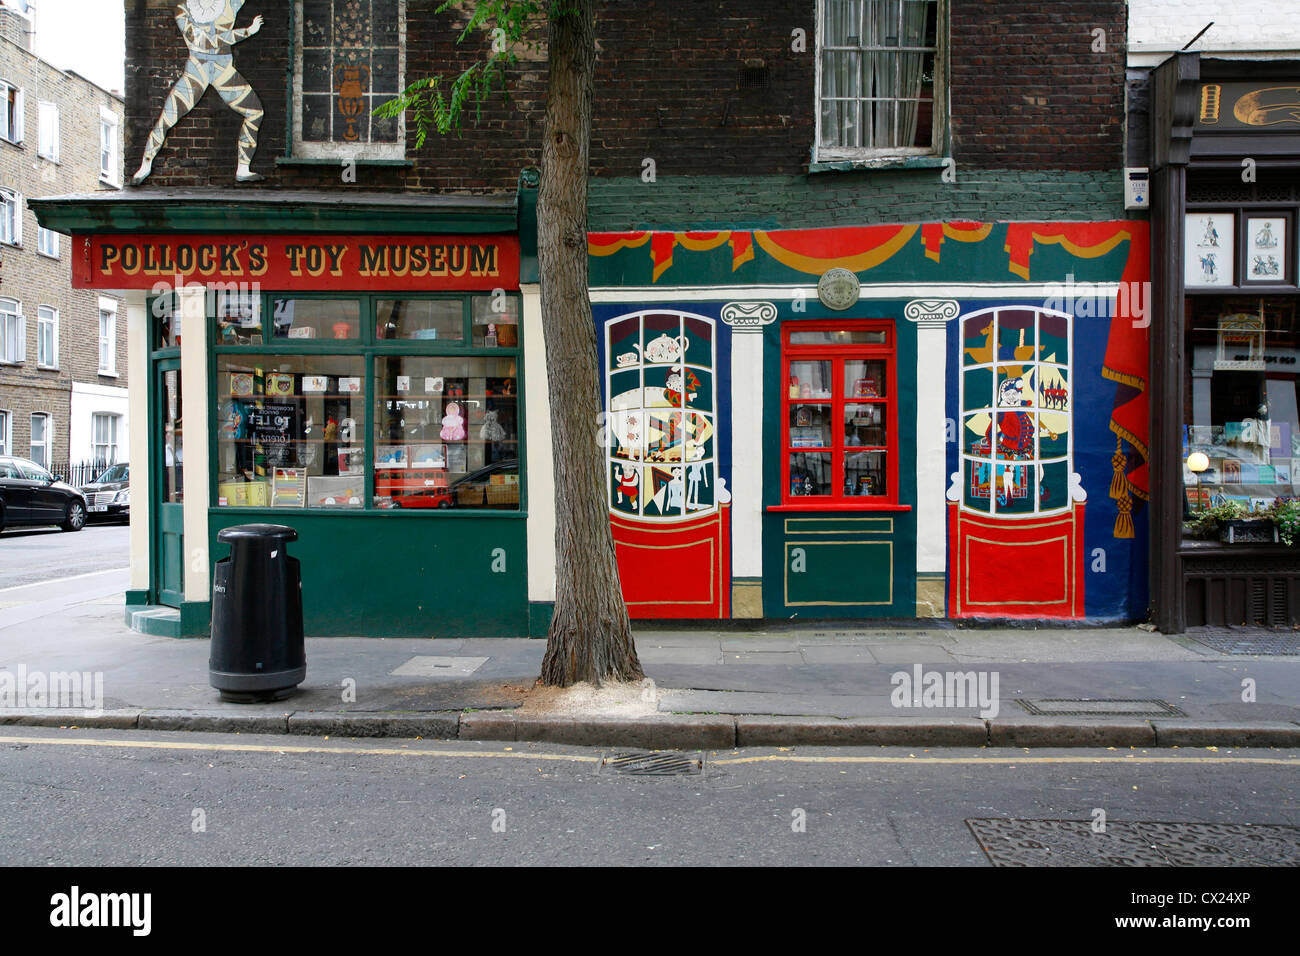 Pollock's Toy Museum à l'angle de la rue et de la rue Scala Whitfield, Fitzrovia, Londres, UK Banque D'Images